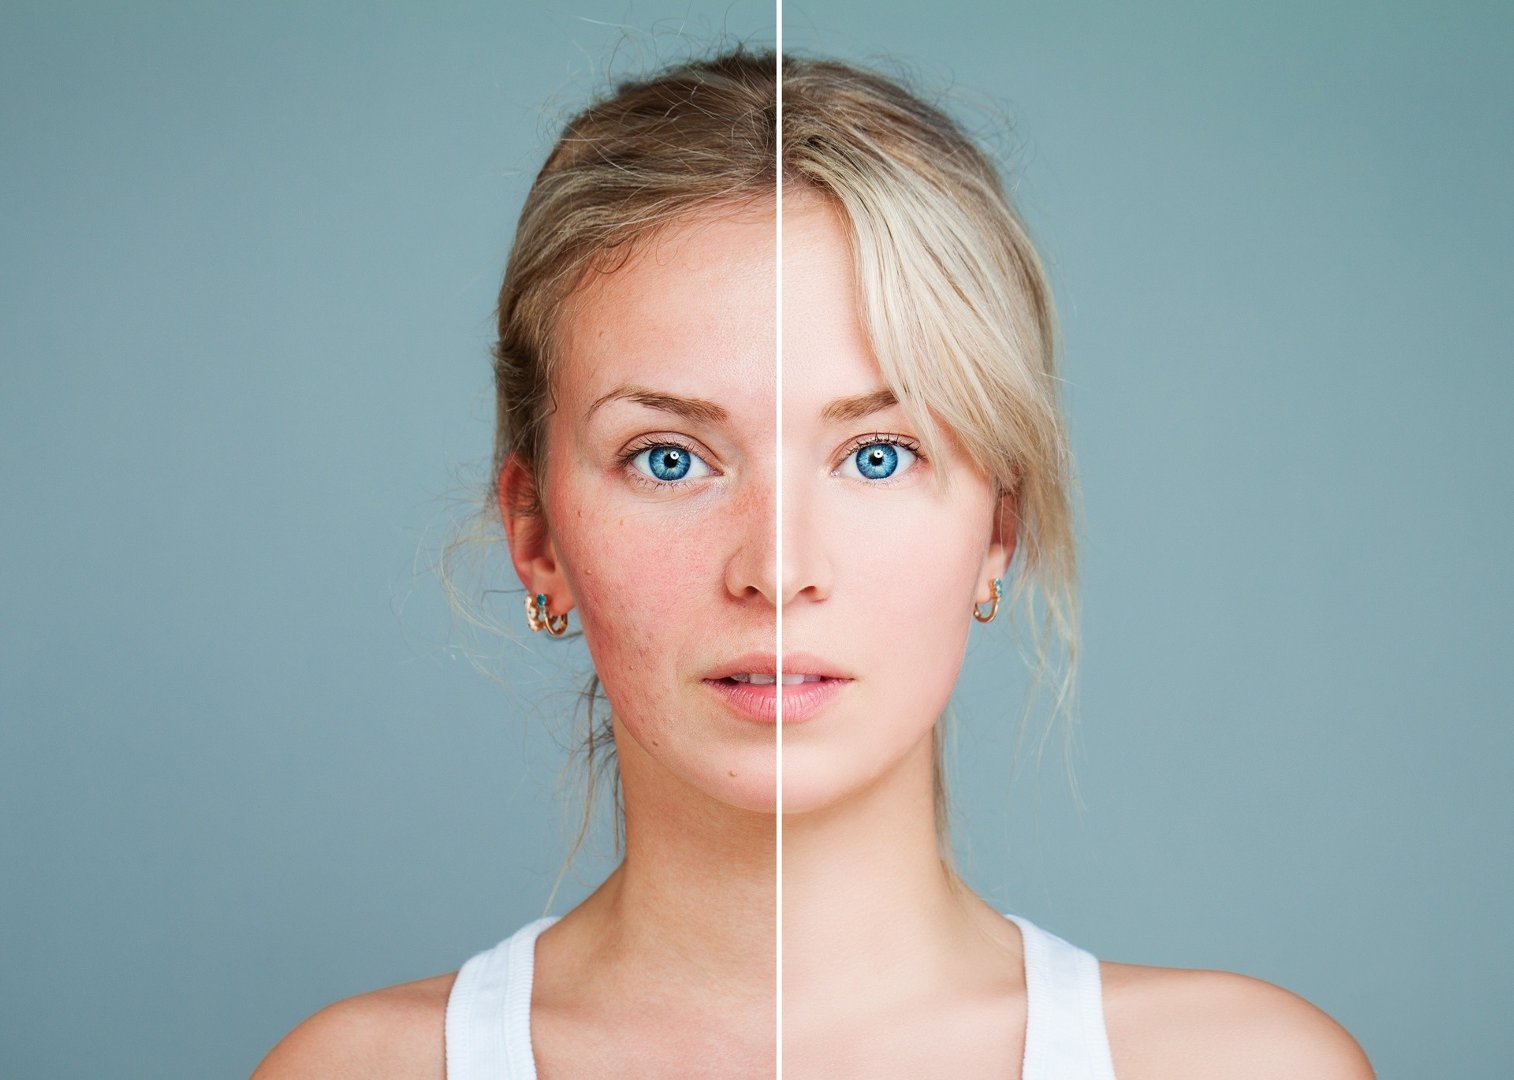 Zaczerwienienia na twarzy – o czym świadczy pieczenie i zaczerwienienie  skóry, nagły rumieniec lub plamy na twarzy? | Strona Zdrowia